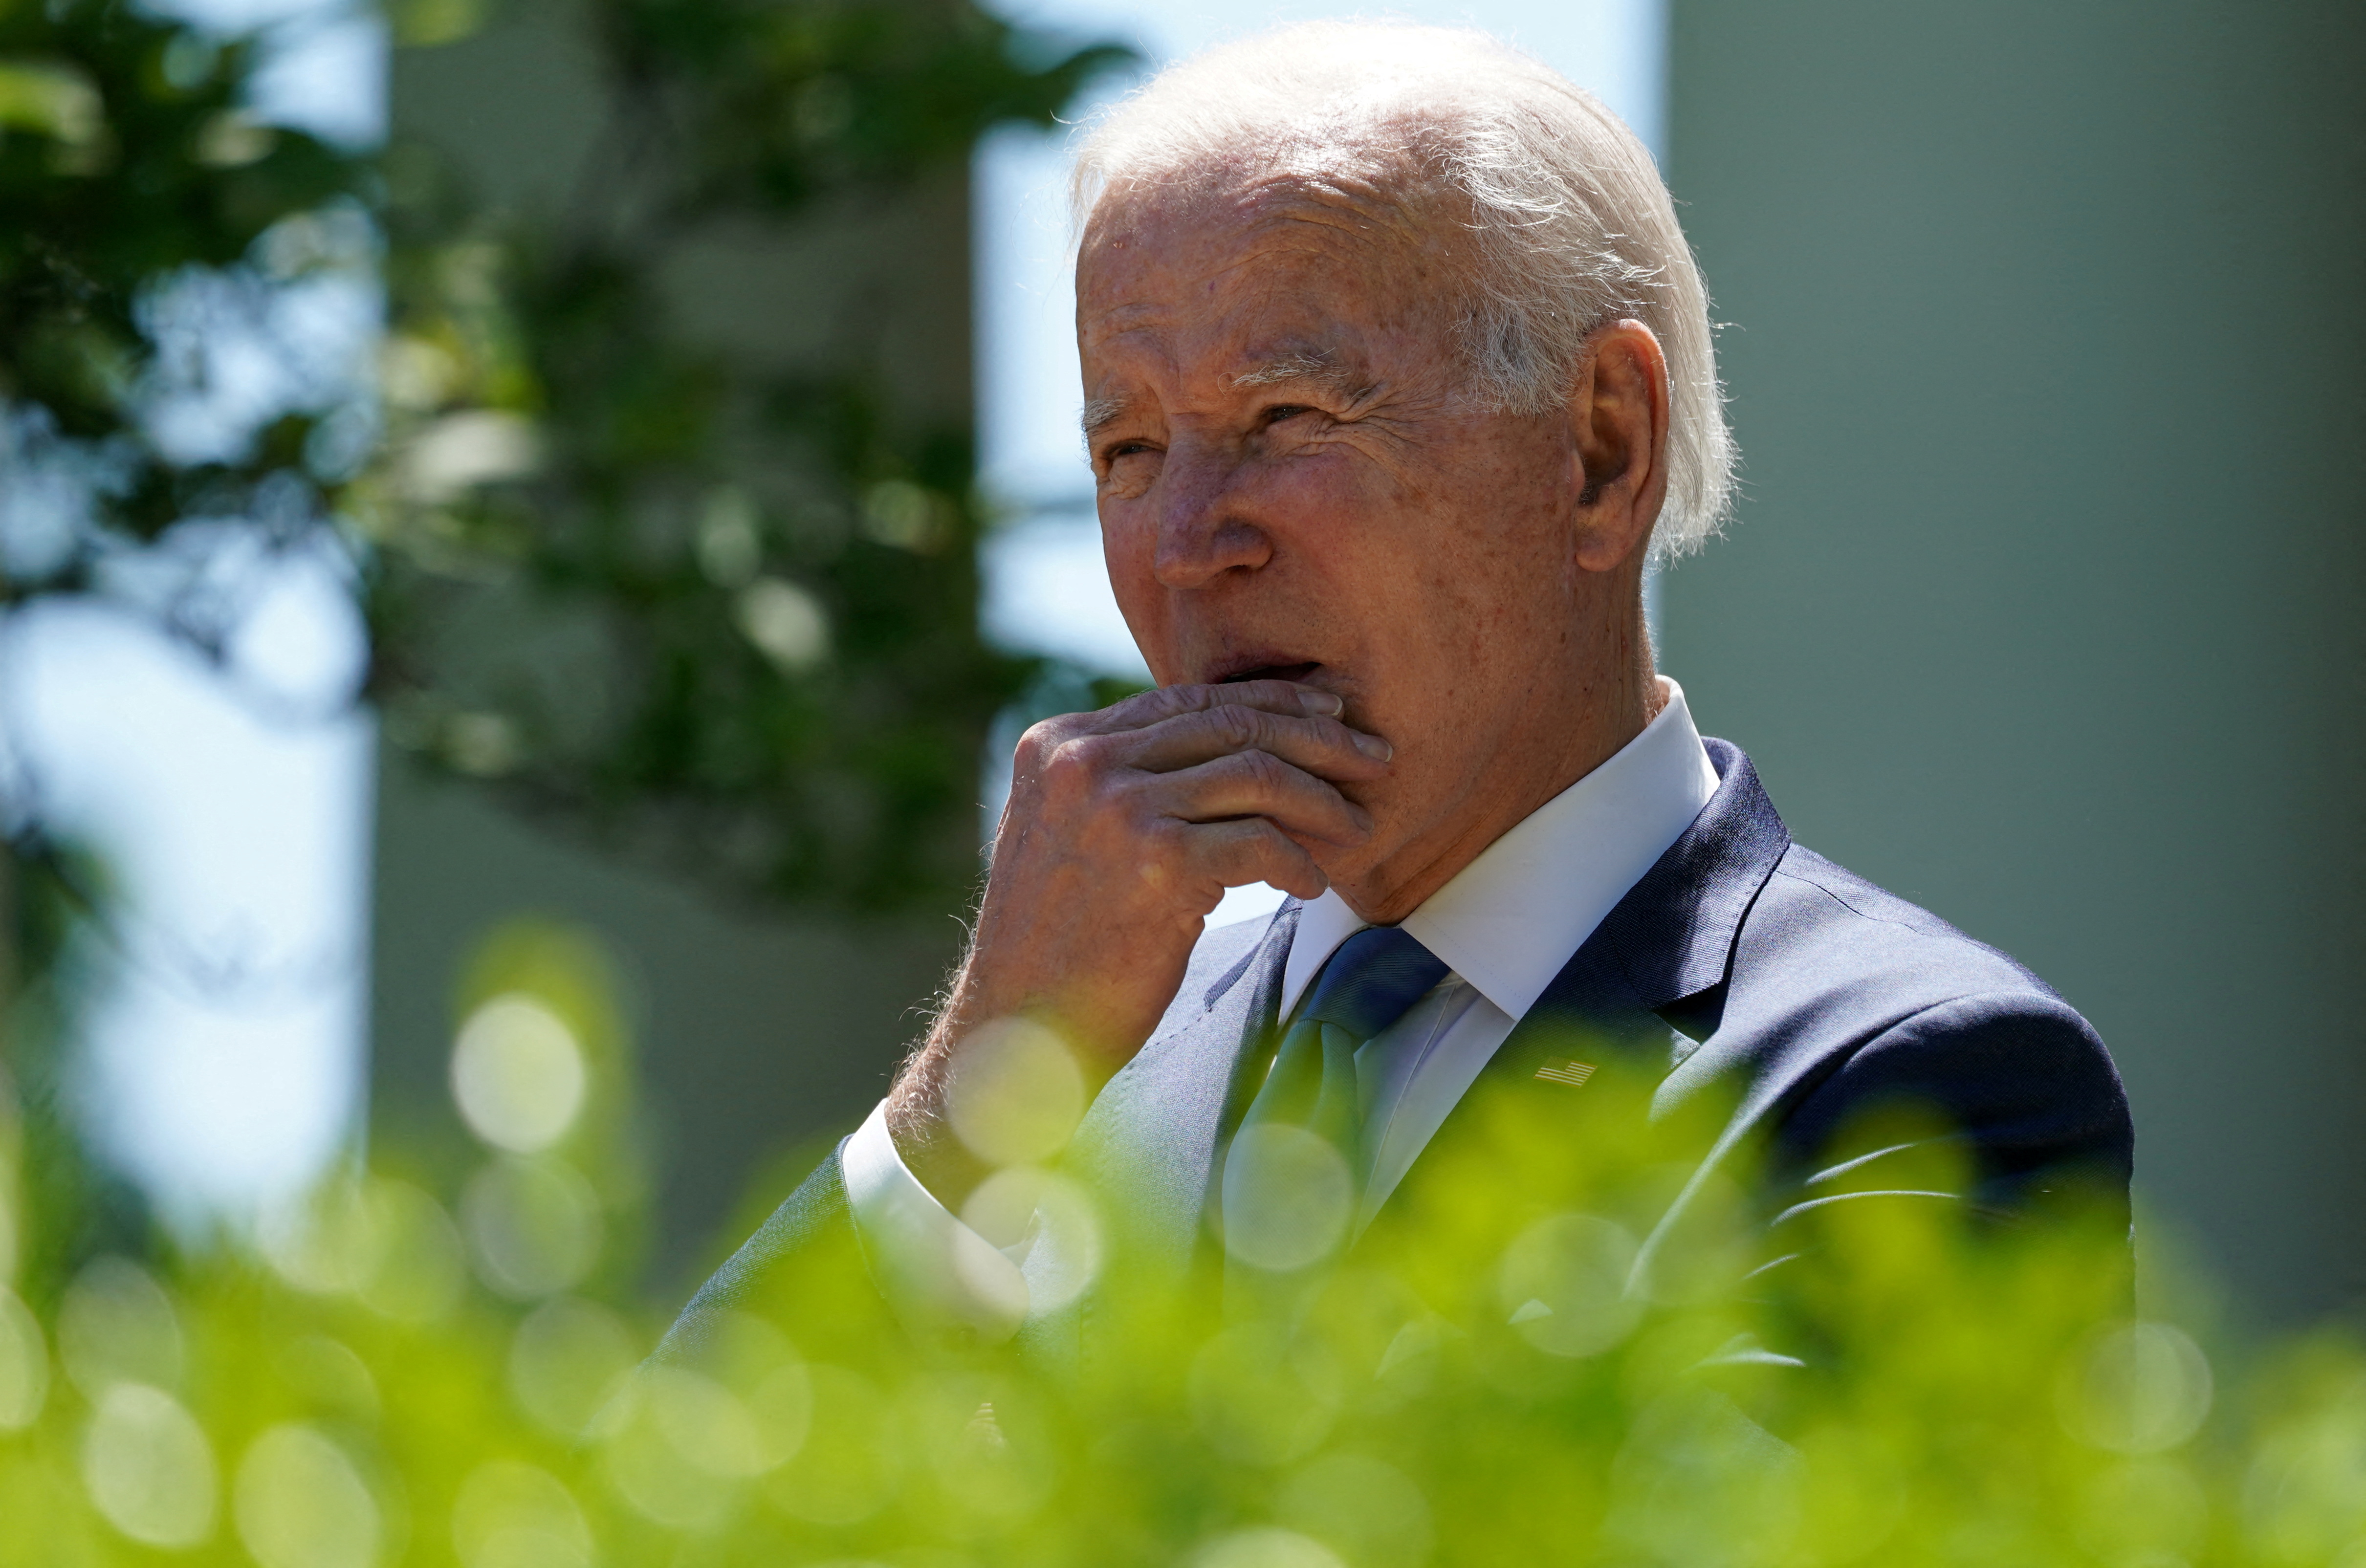 Durante um evento Rose Garden na Casa Branca em Washington, D.C., o presidente Biden falou sobre a expansão do acesso à Internet de alta velocidade.